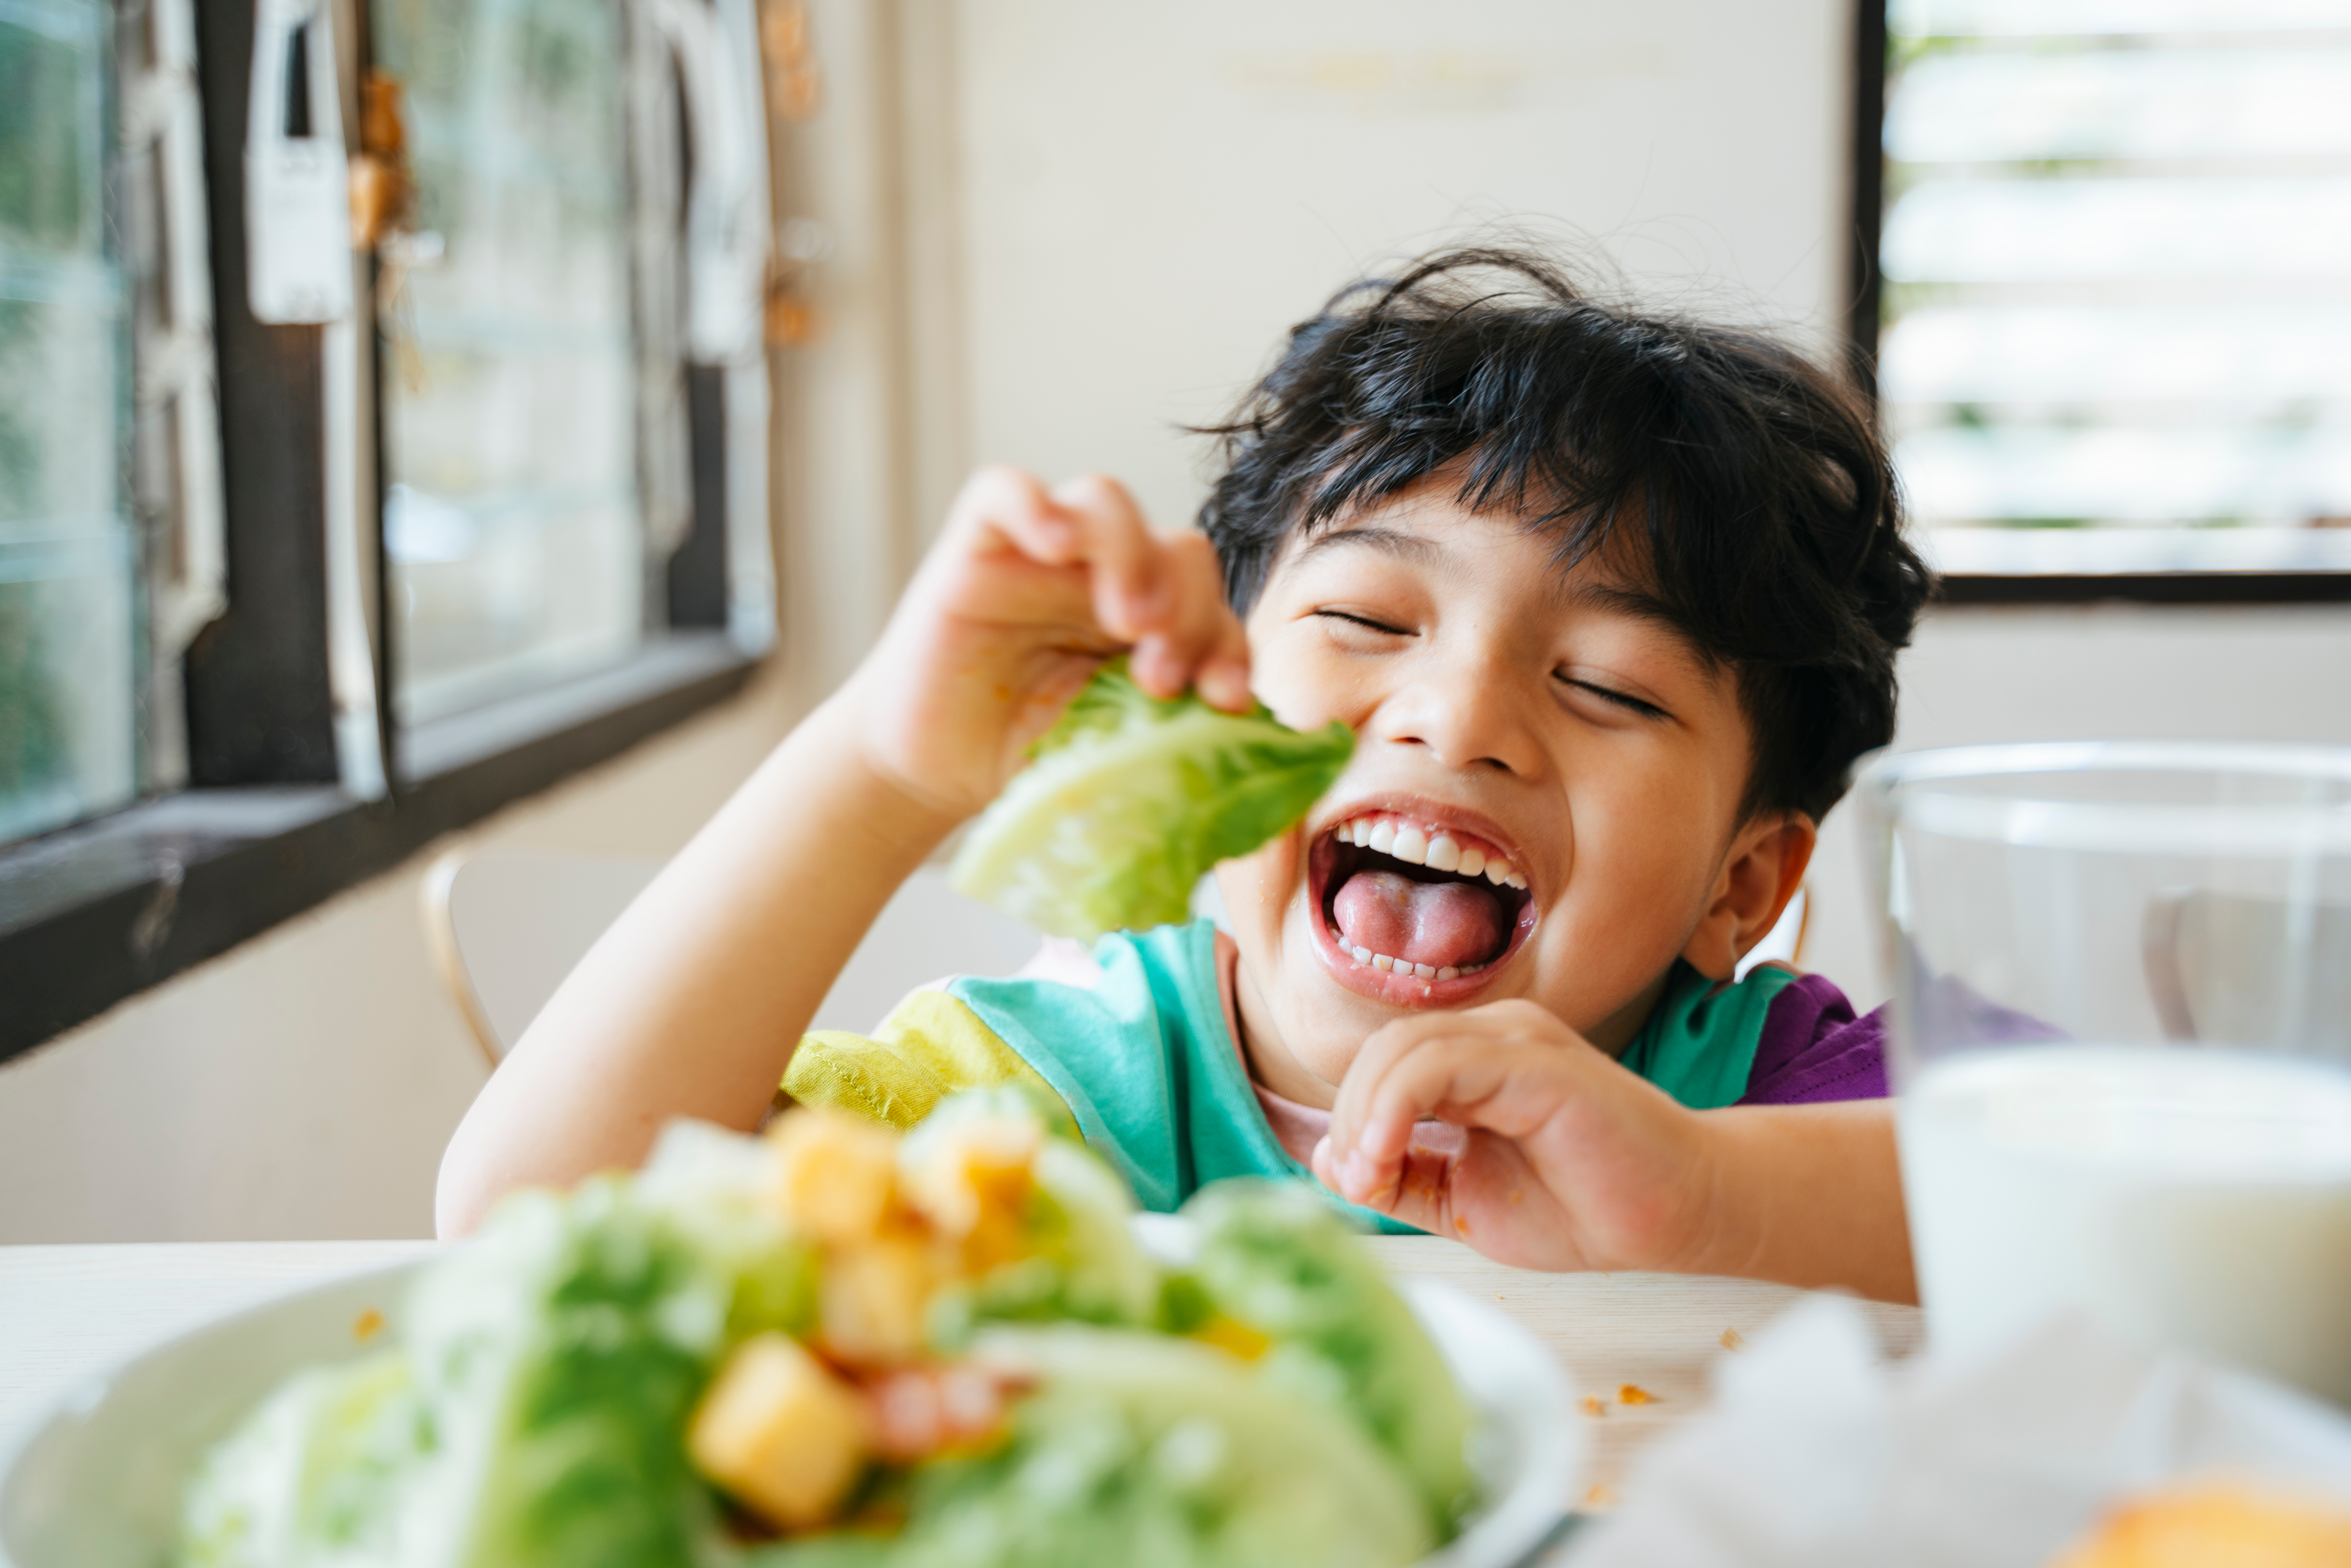 Estes alimentos ajudam no desenvolvimento cognitivo de crianças, segundo nutricionistas